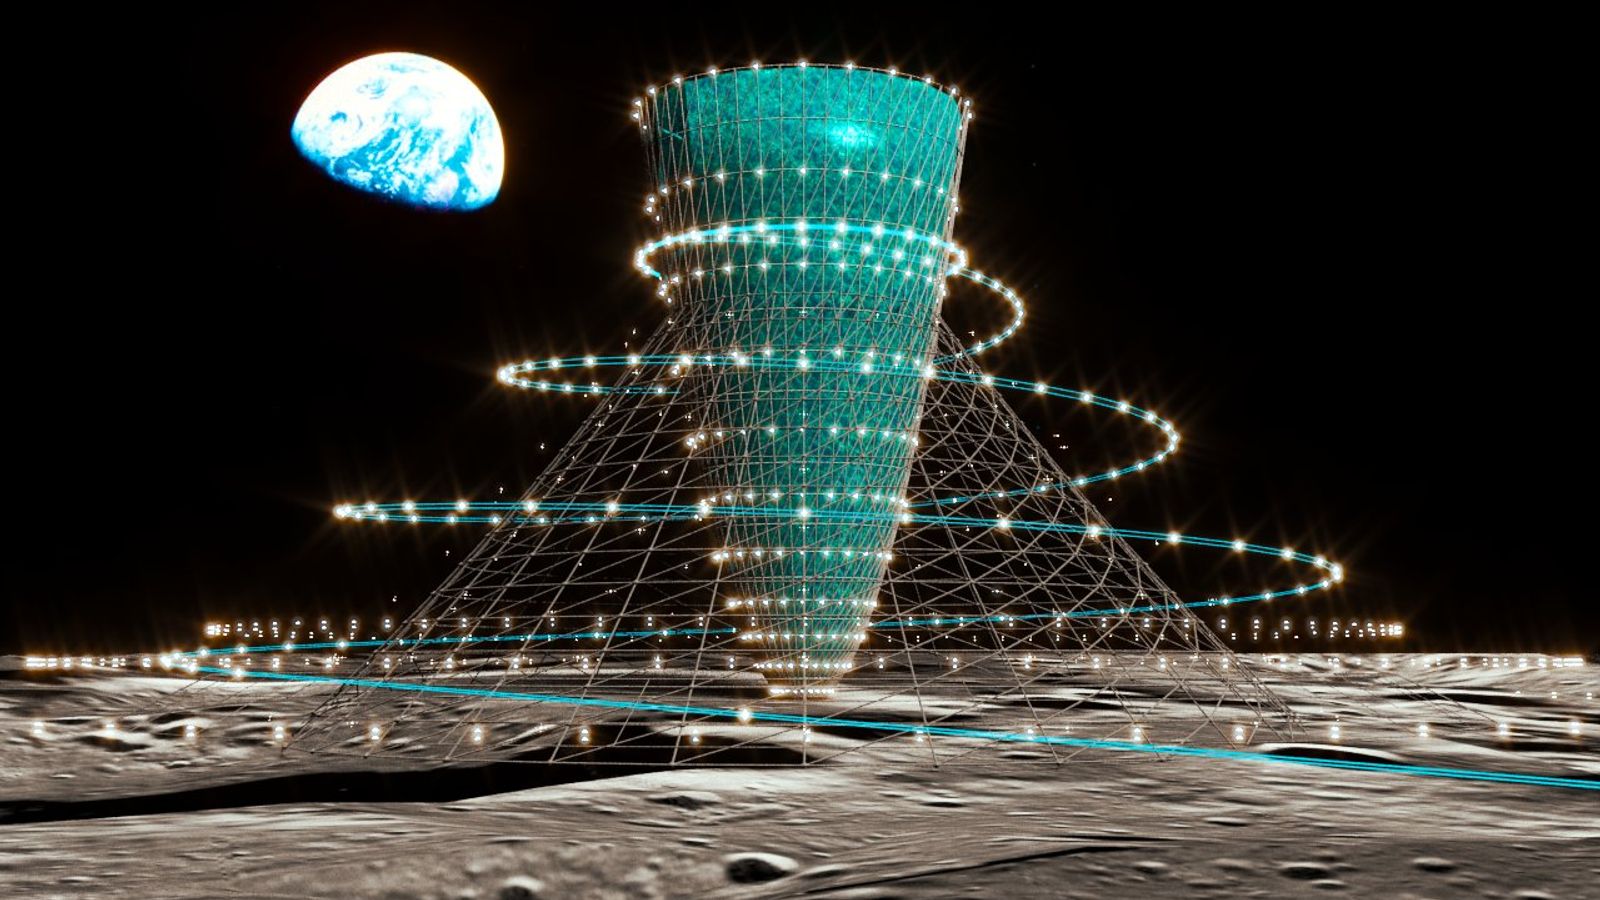 Ricercatori giapponesi rivelano strutture di gravità artificiale proposte per la Luna e Marte |  notizie di scienza e tecnologia